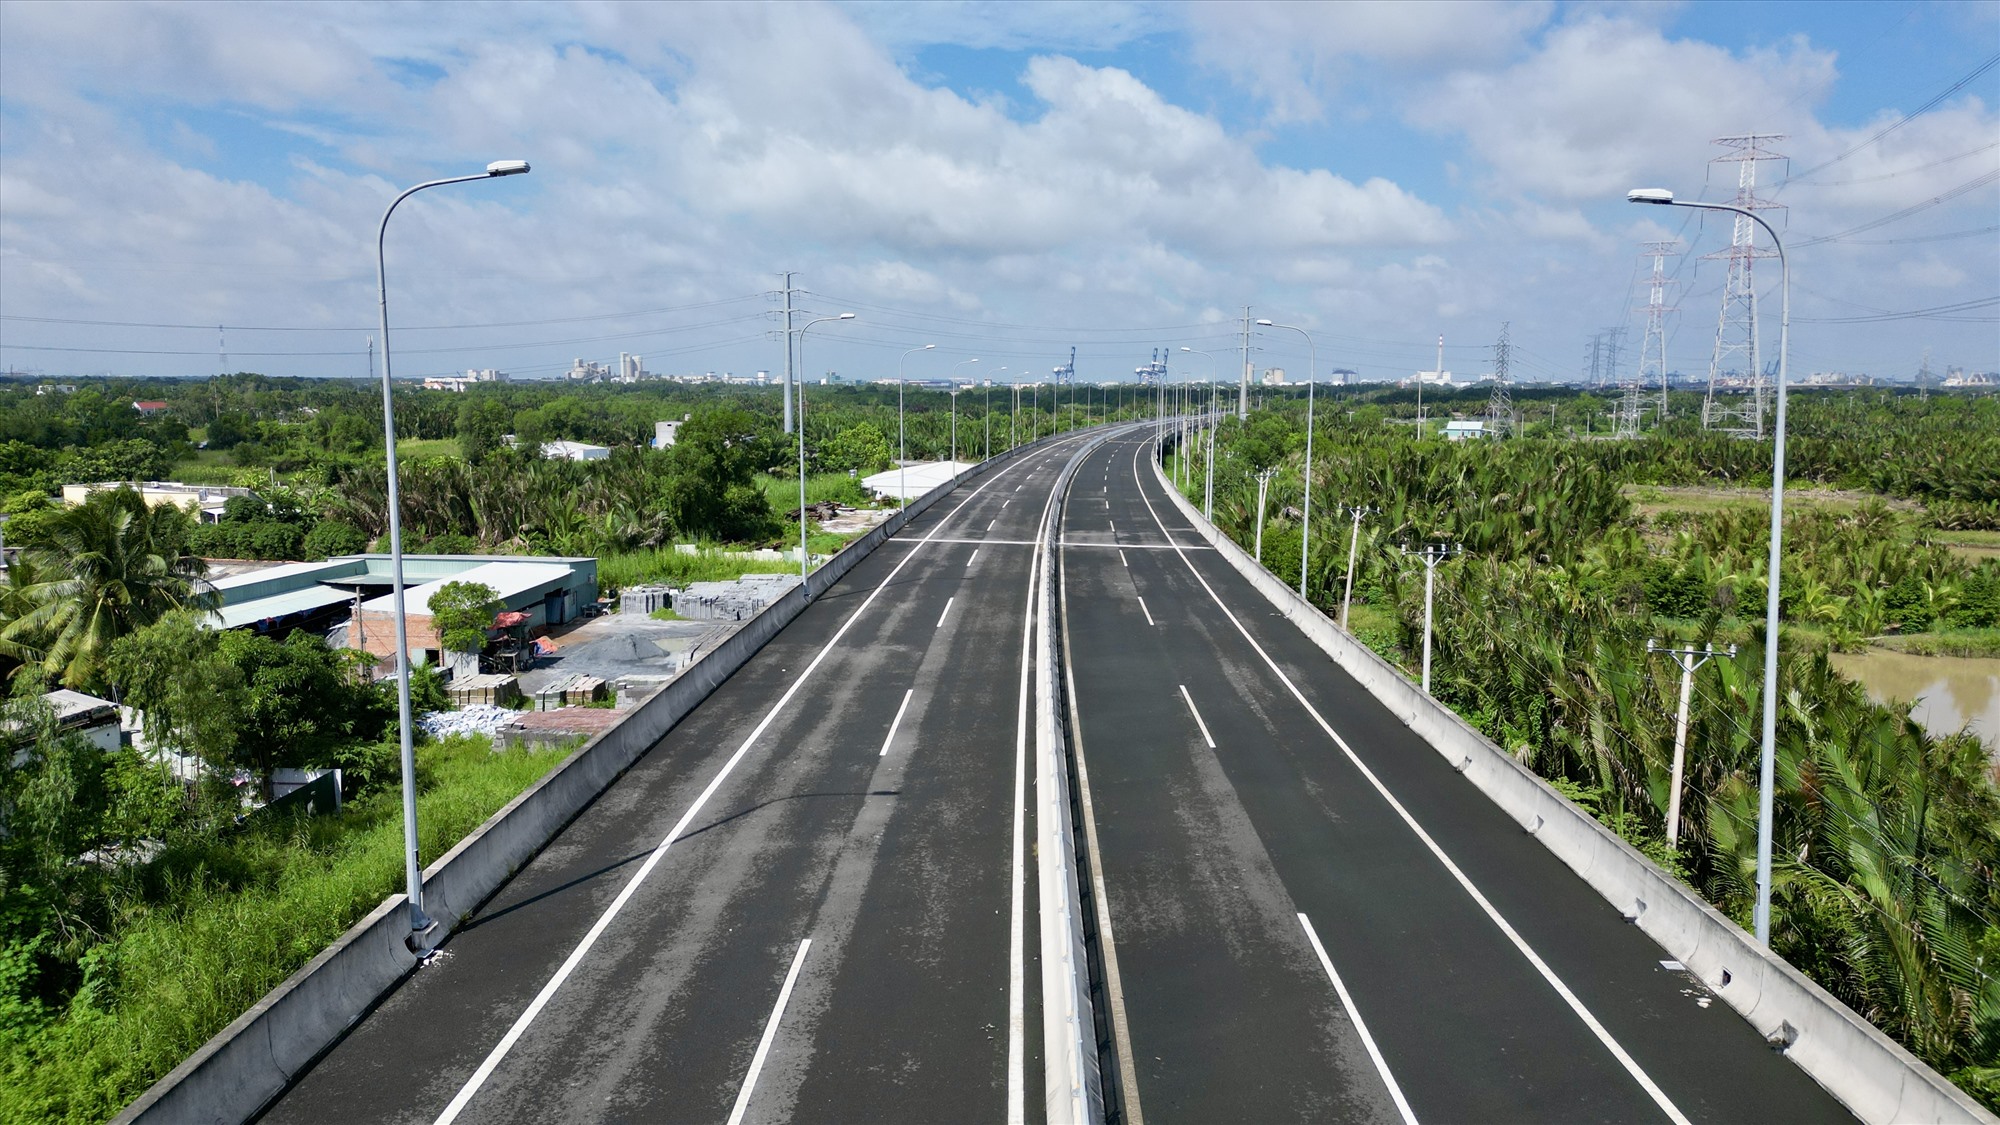 Toàn tuyến được xây dựng theo tiêu chuẩn đường cao tốc loại A, với 4 làn xe và hai làn dừng khẩn cấp, vận tốc thiết kế 100 km/h.